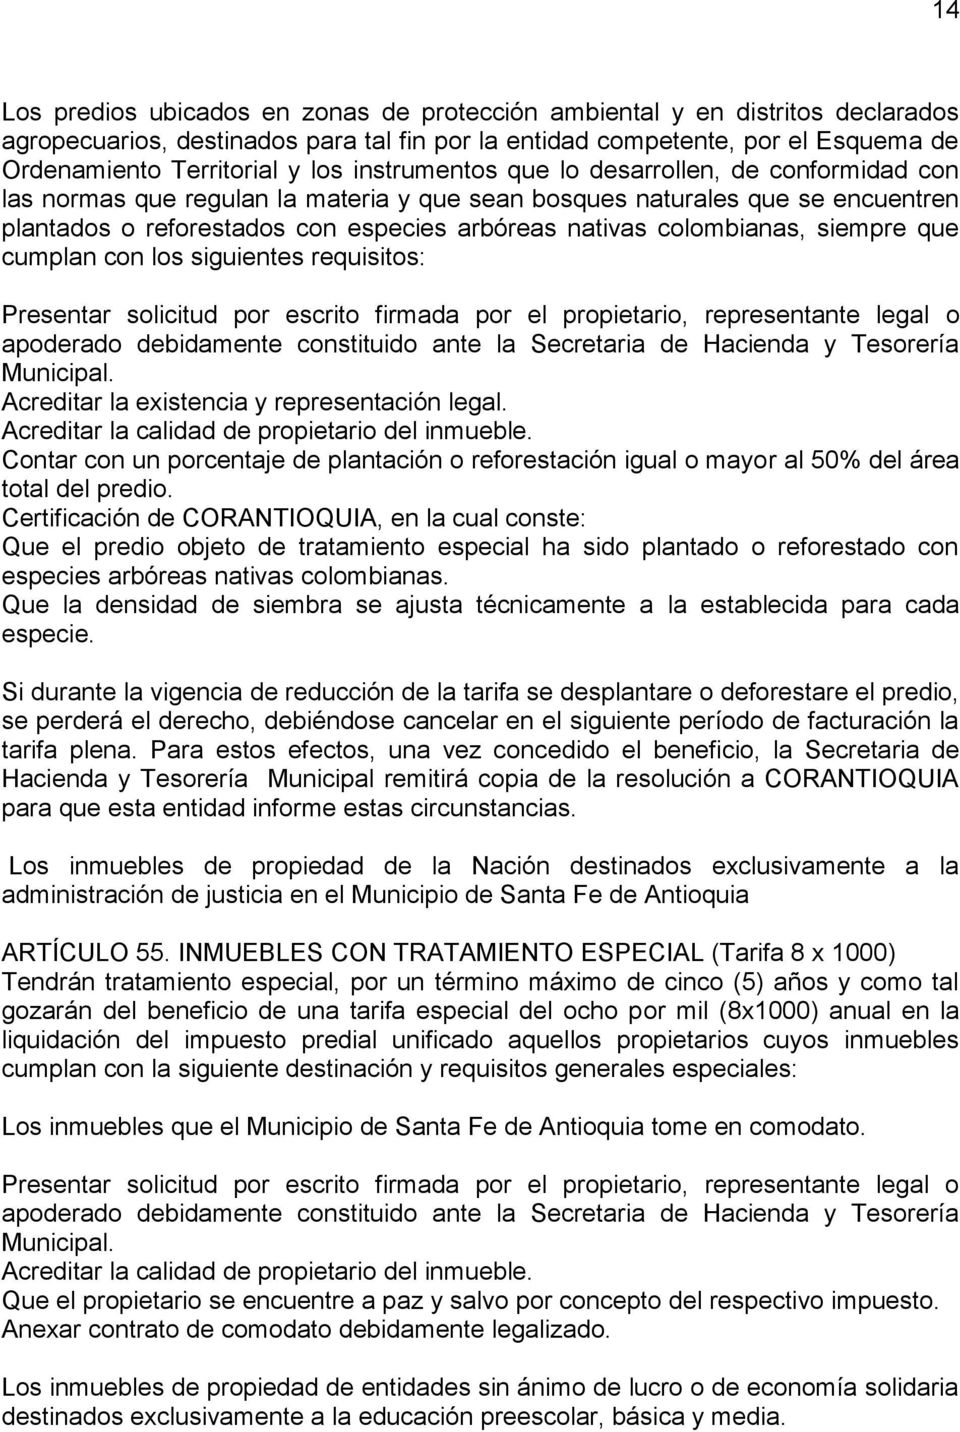 colombianas, siempre que cumplan con los siguientes requisitos: Presentar solicitud por escrito firmada por el propietario, representante legal o apoderado debidamente constituido ante la Secretaria